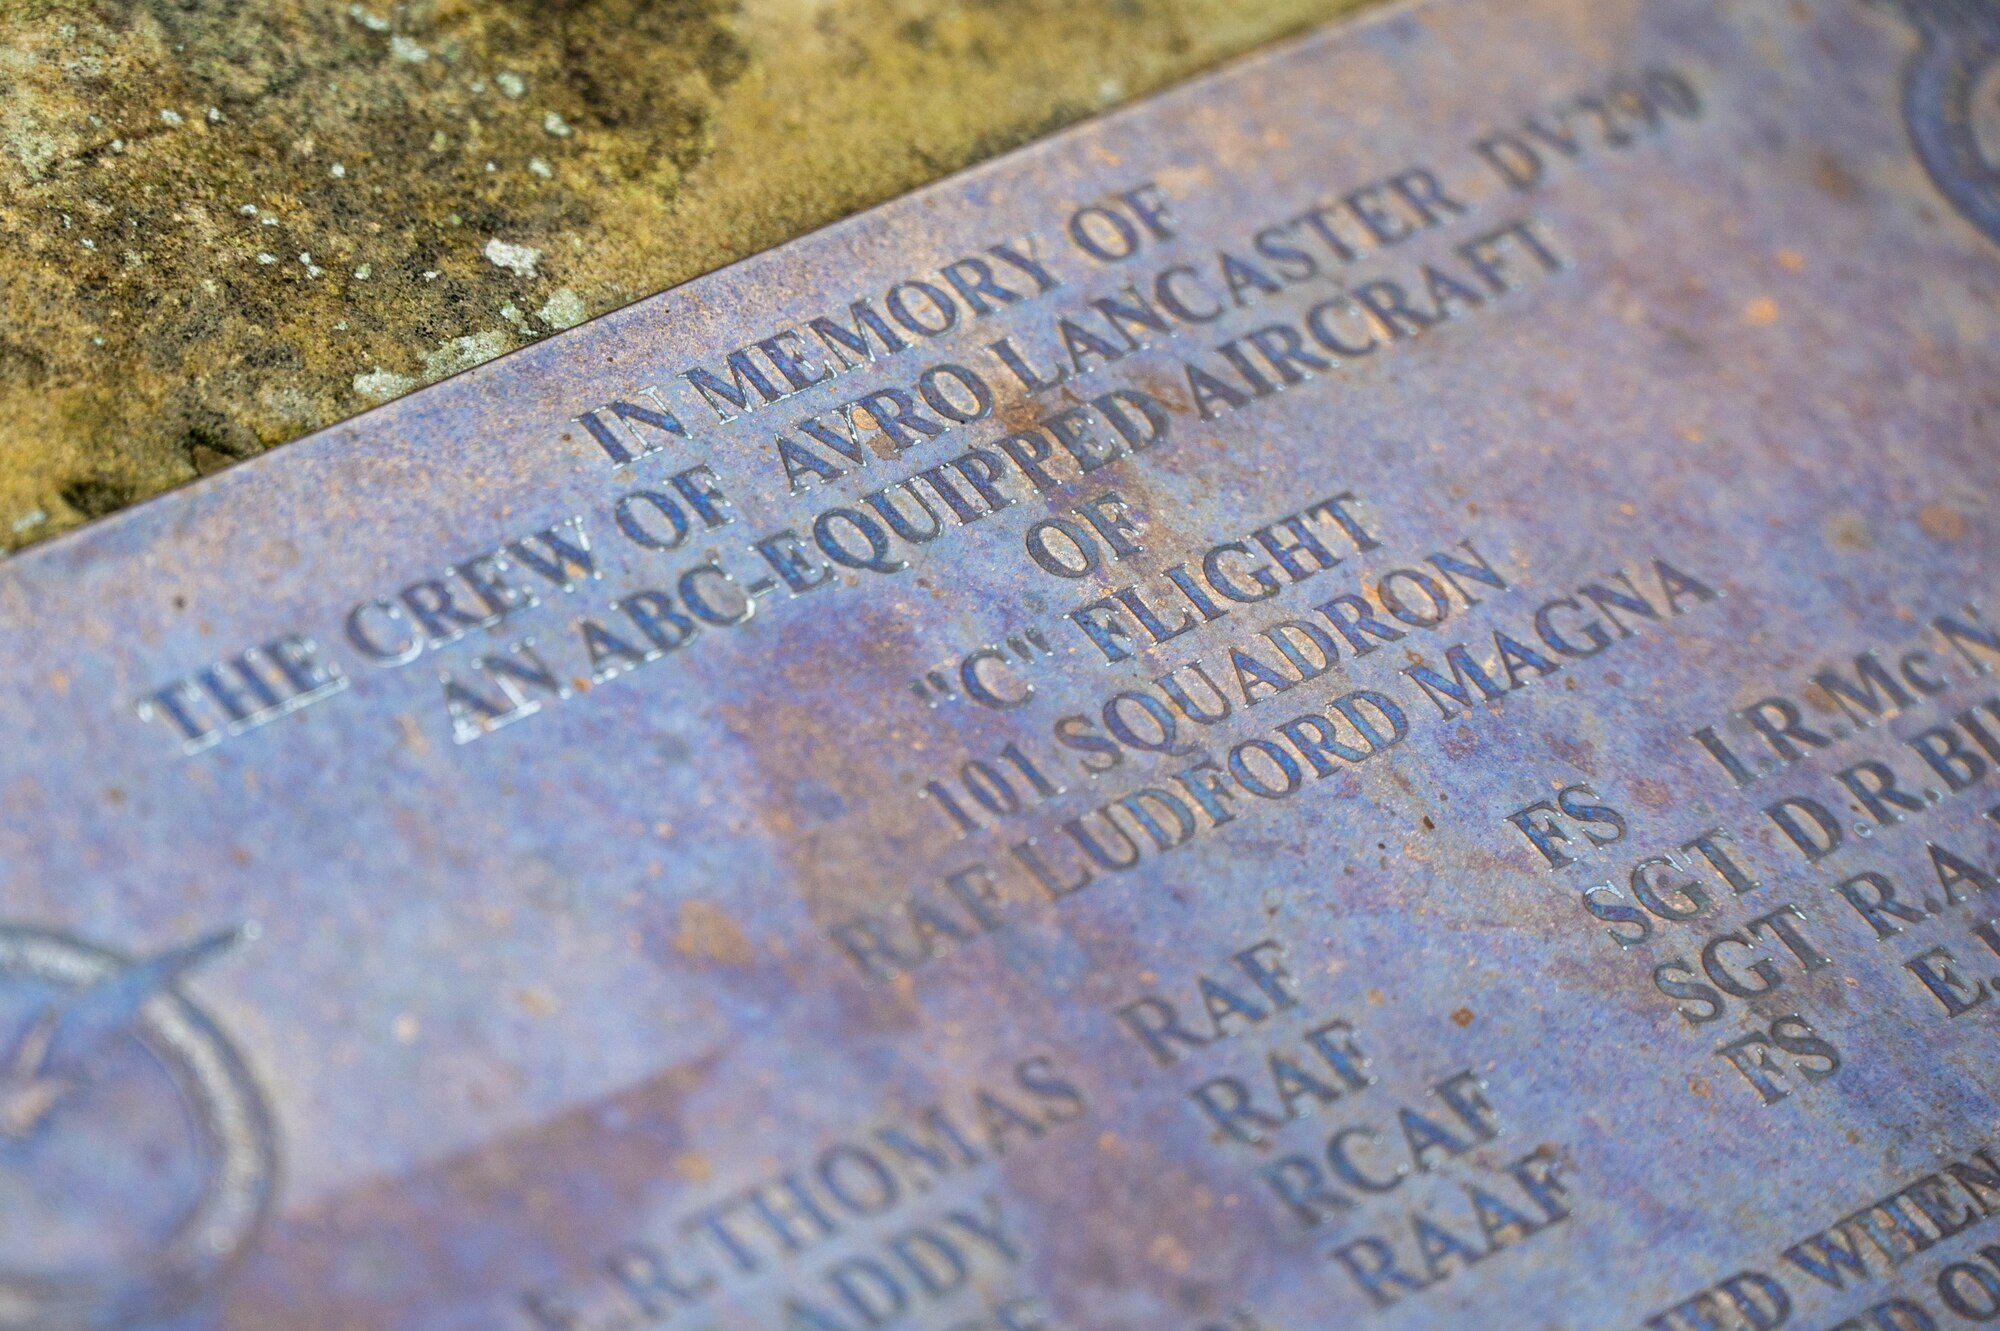 A close up of a memorial plaque.